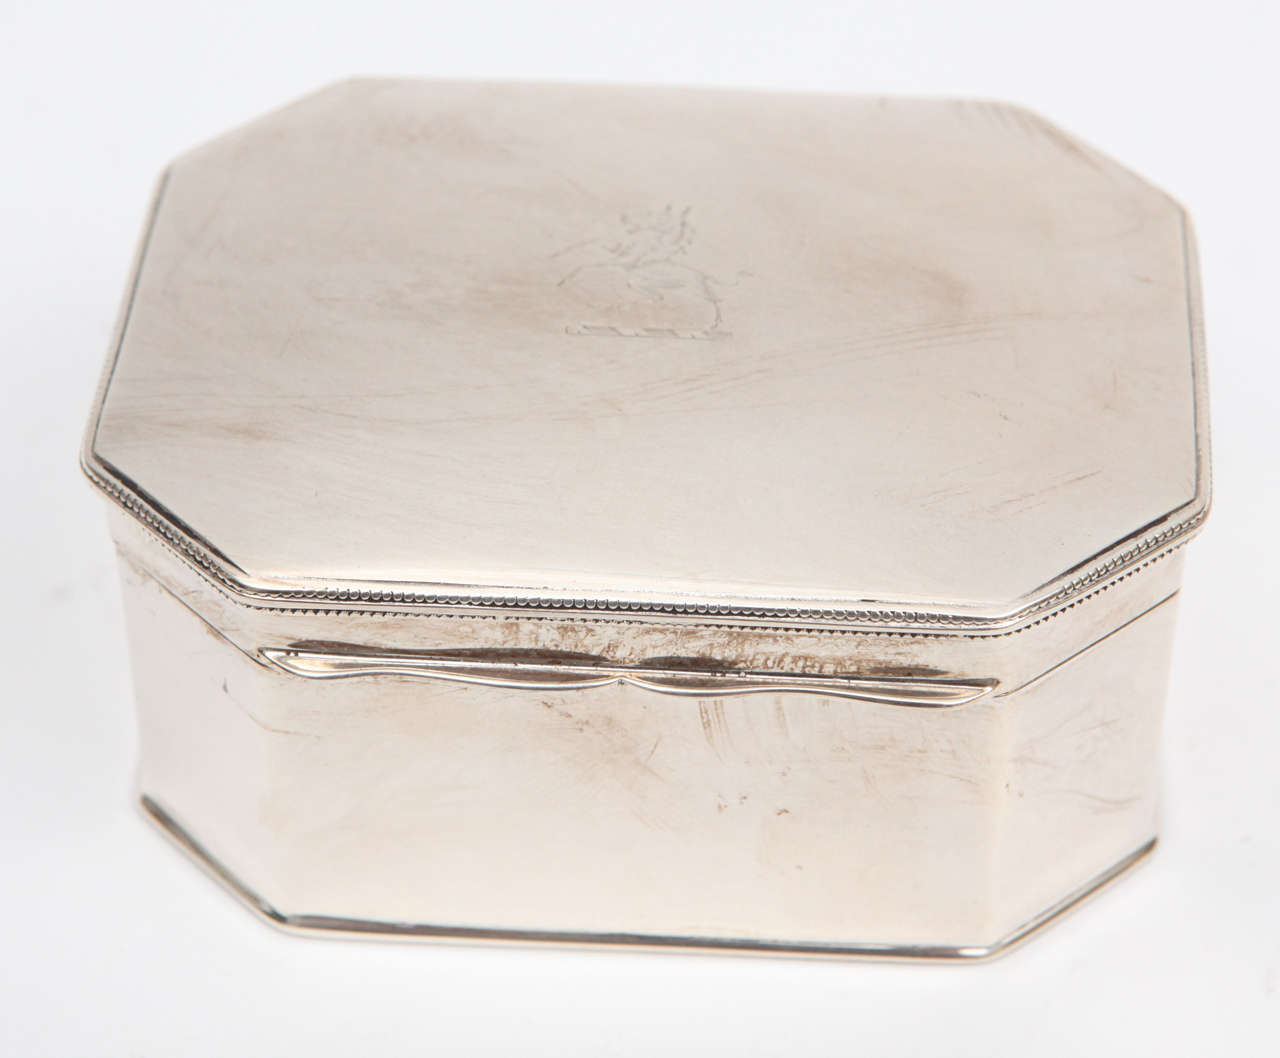 boîte anglaise des années 1900 en sterling avec intérieur lavé à l'or. La boîte est poinçonnée.